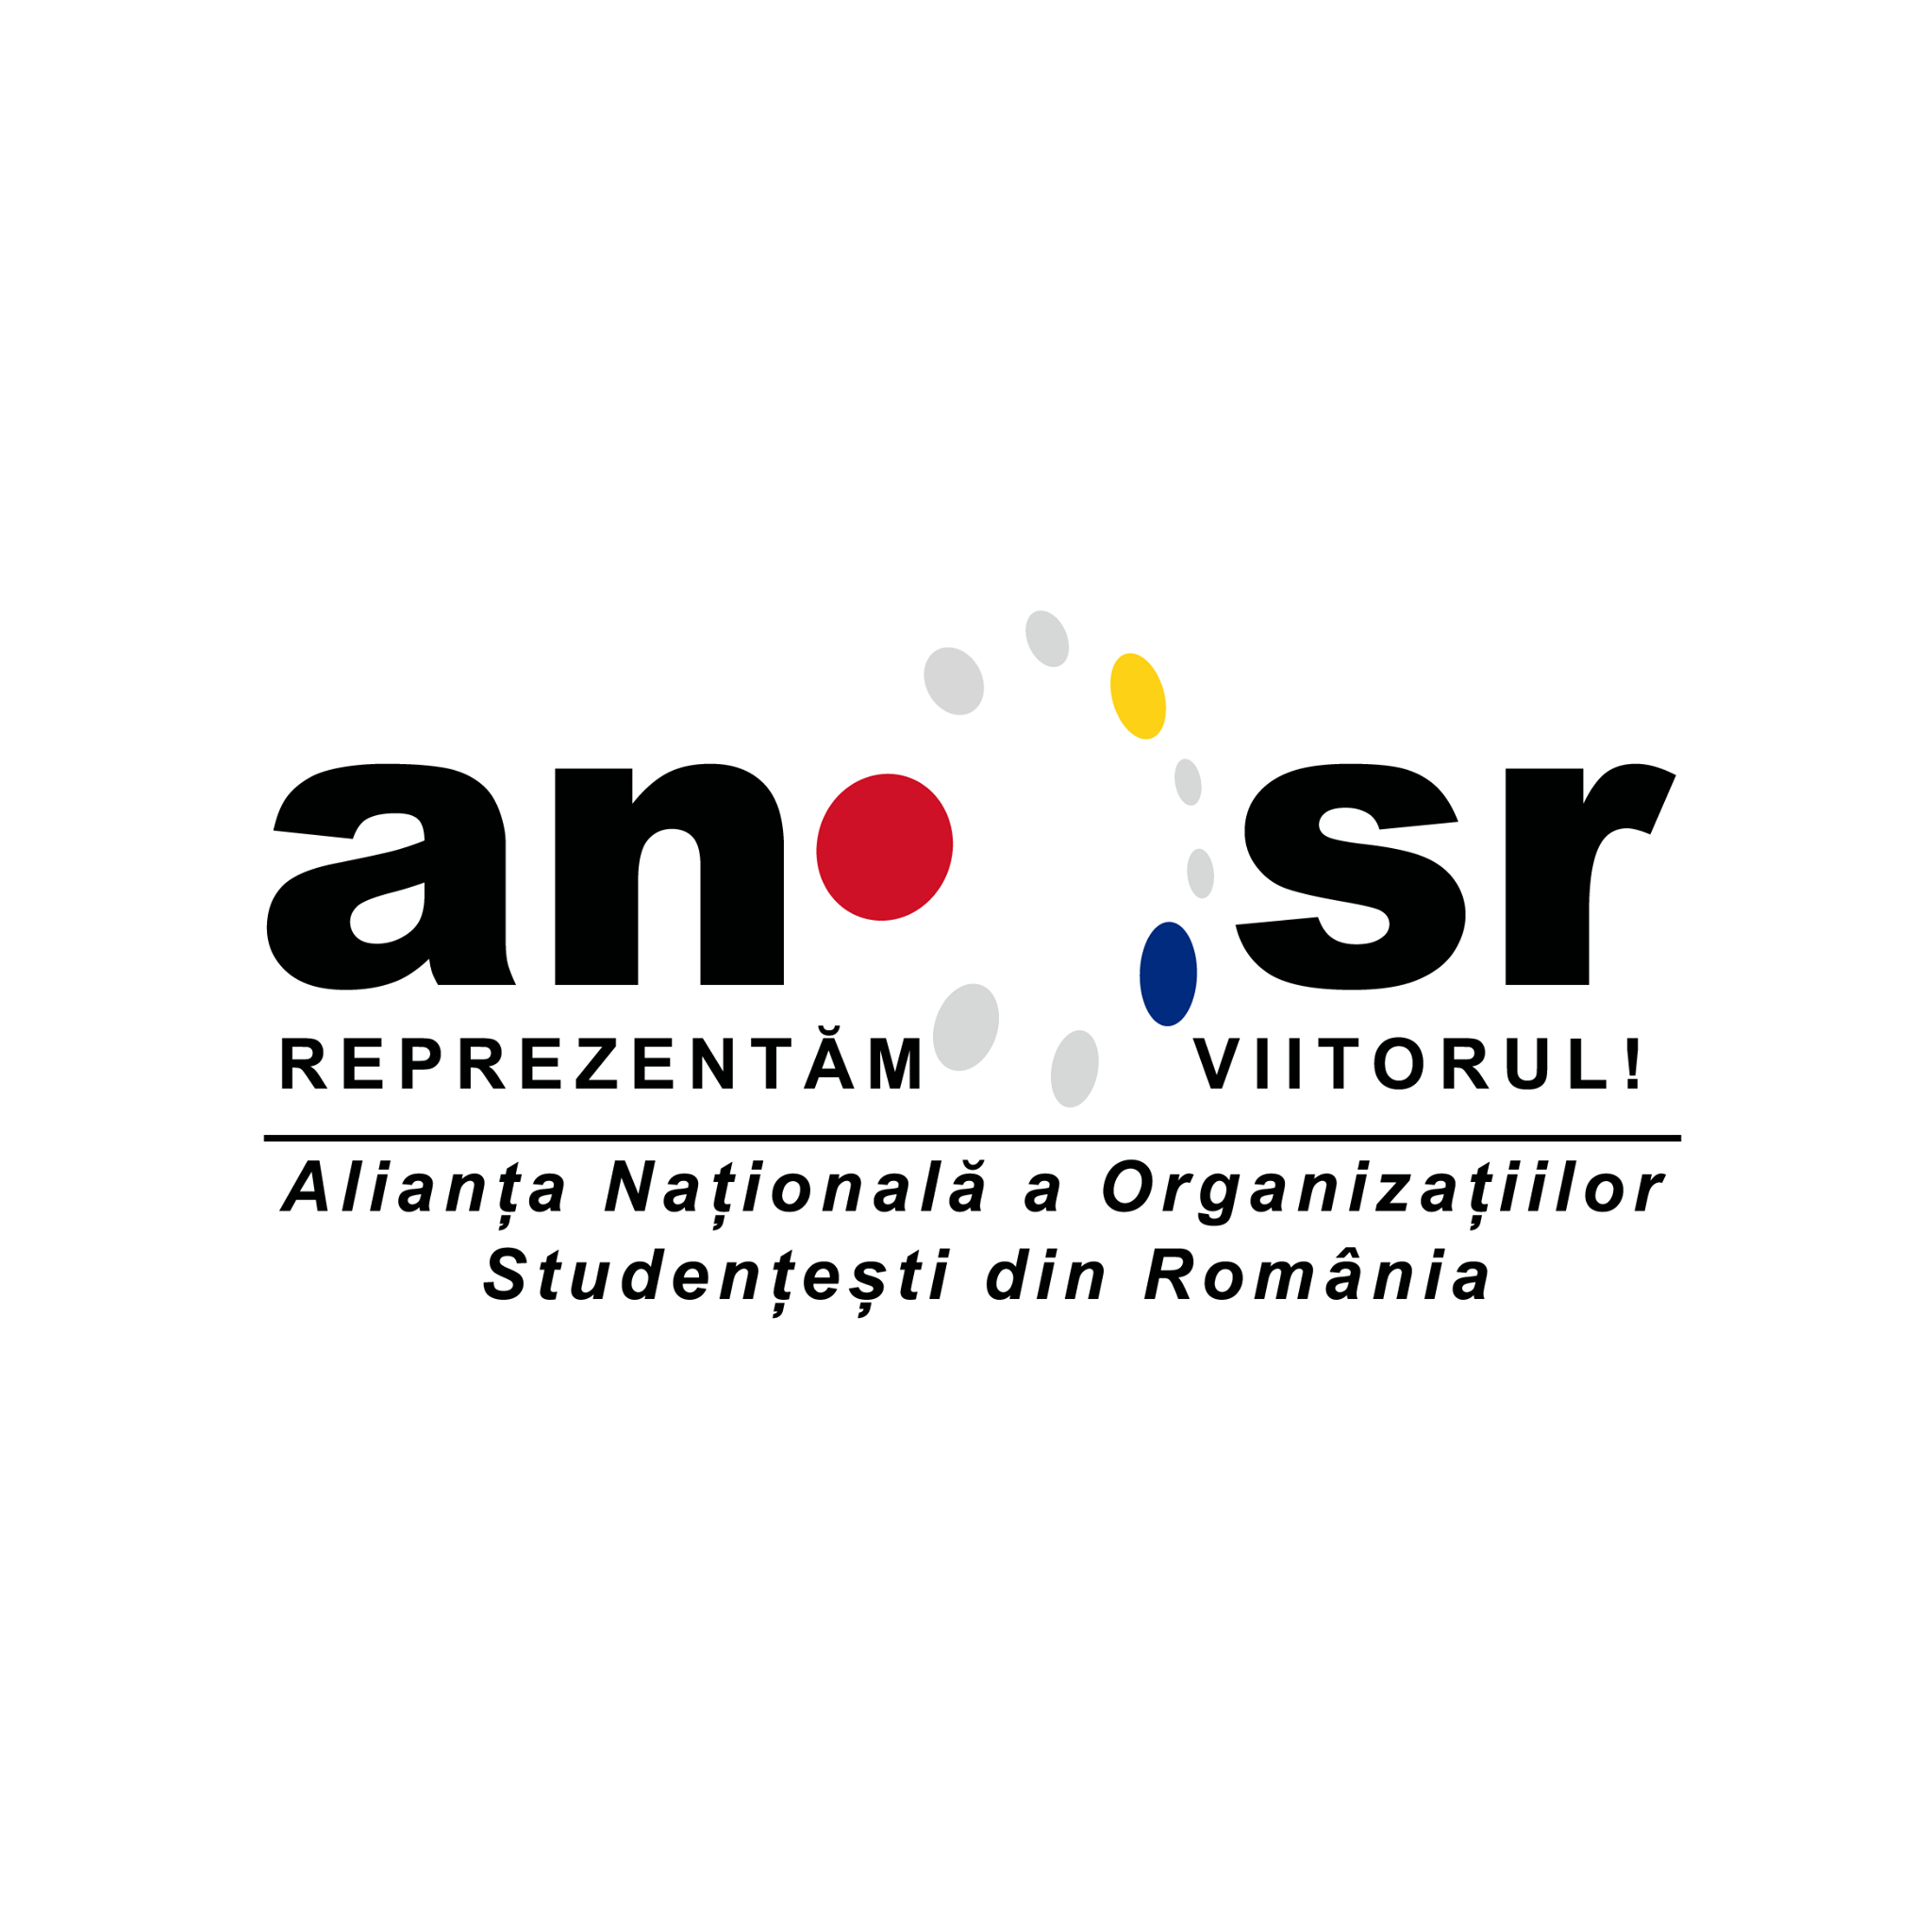 Alianța Națională a Organizațiilor Studențești din România (ANOSR) logo